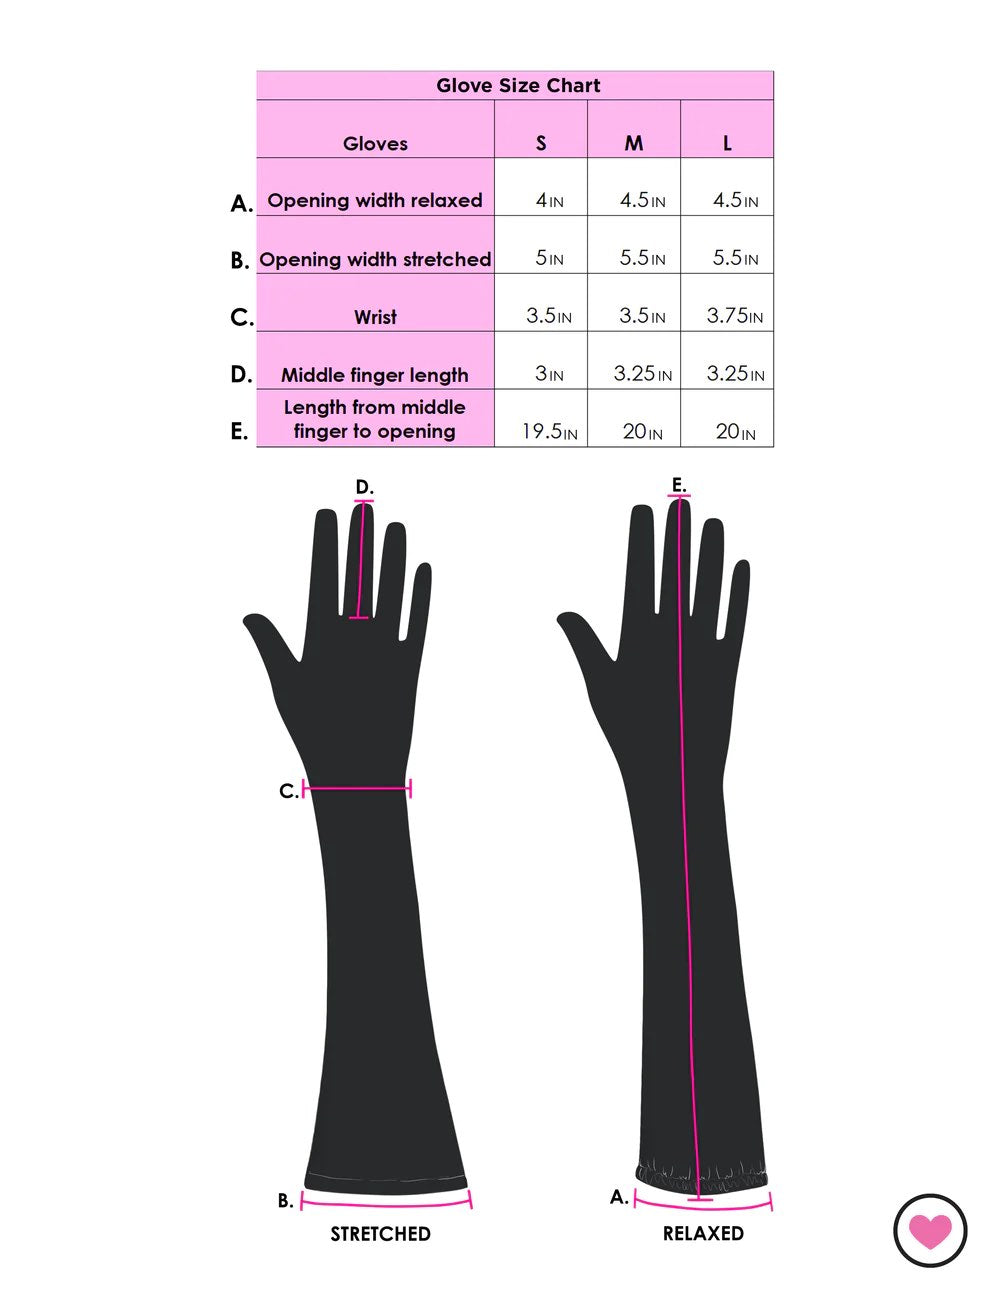 Glove size chart.